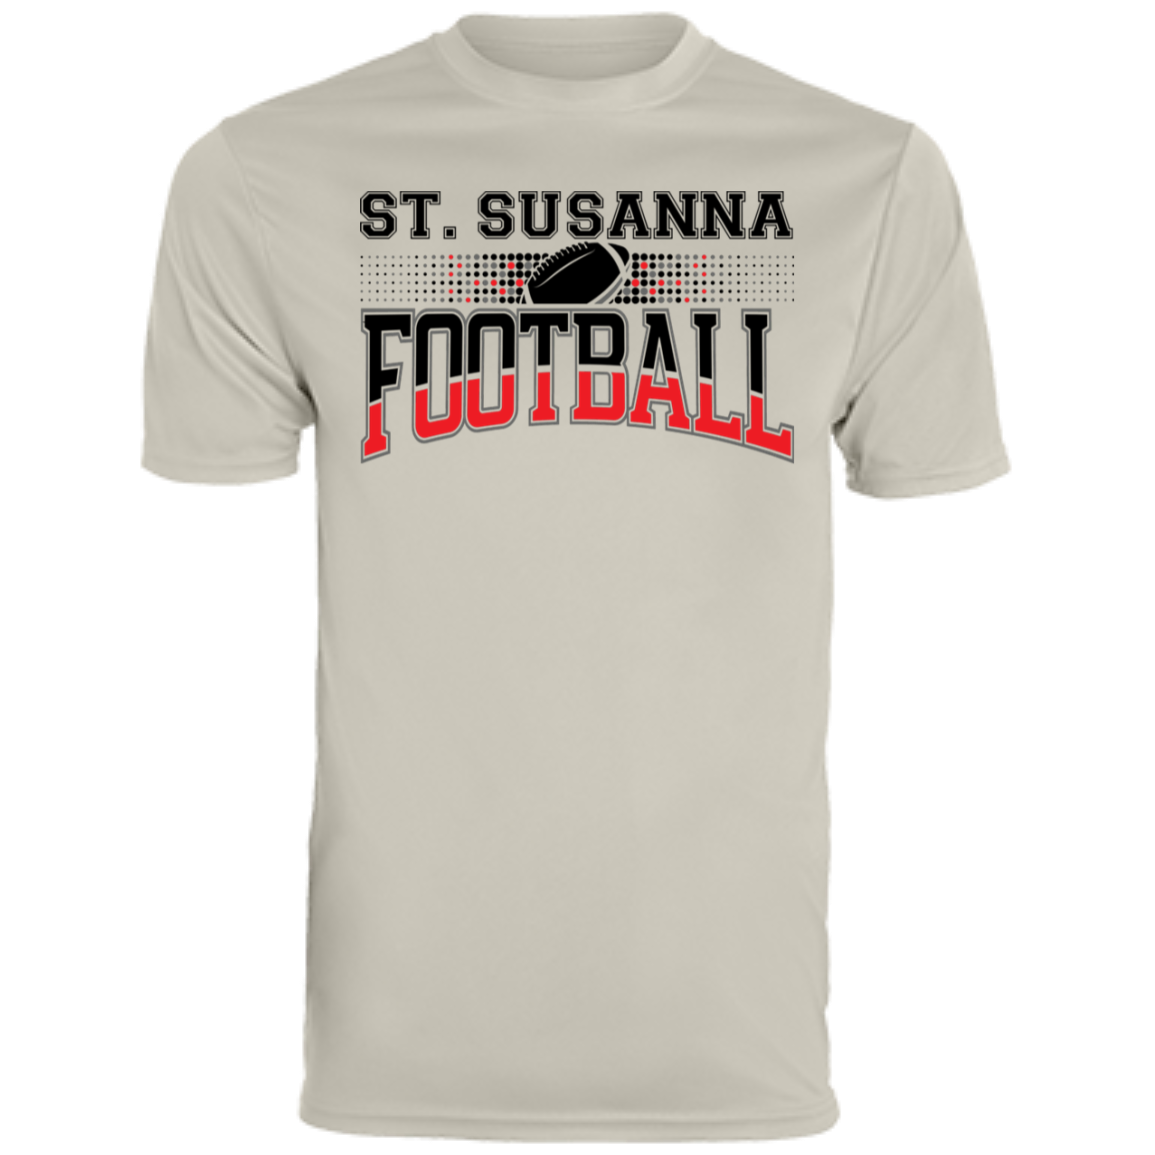 St. Susanna Football Men's Moisture-Wicking Tee